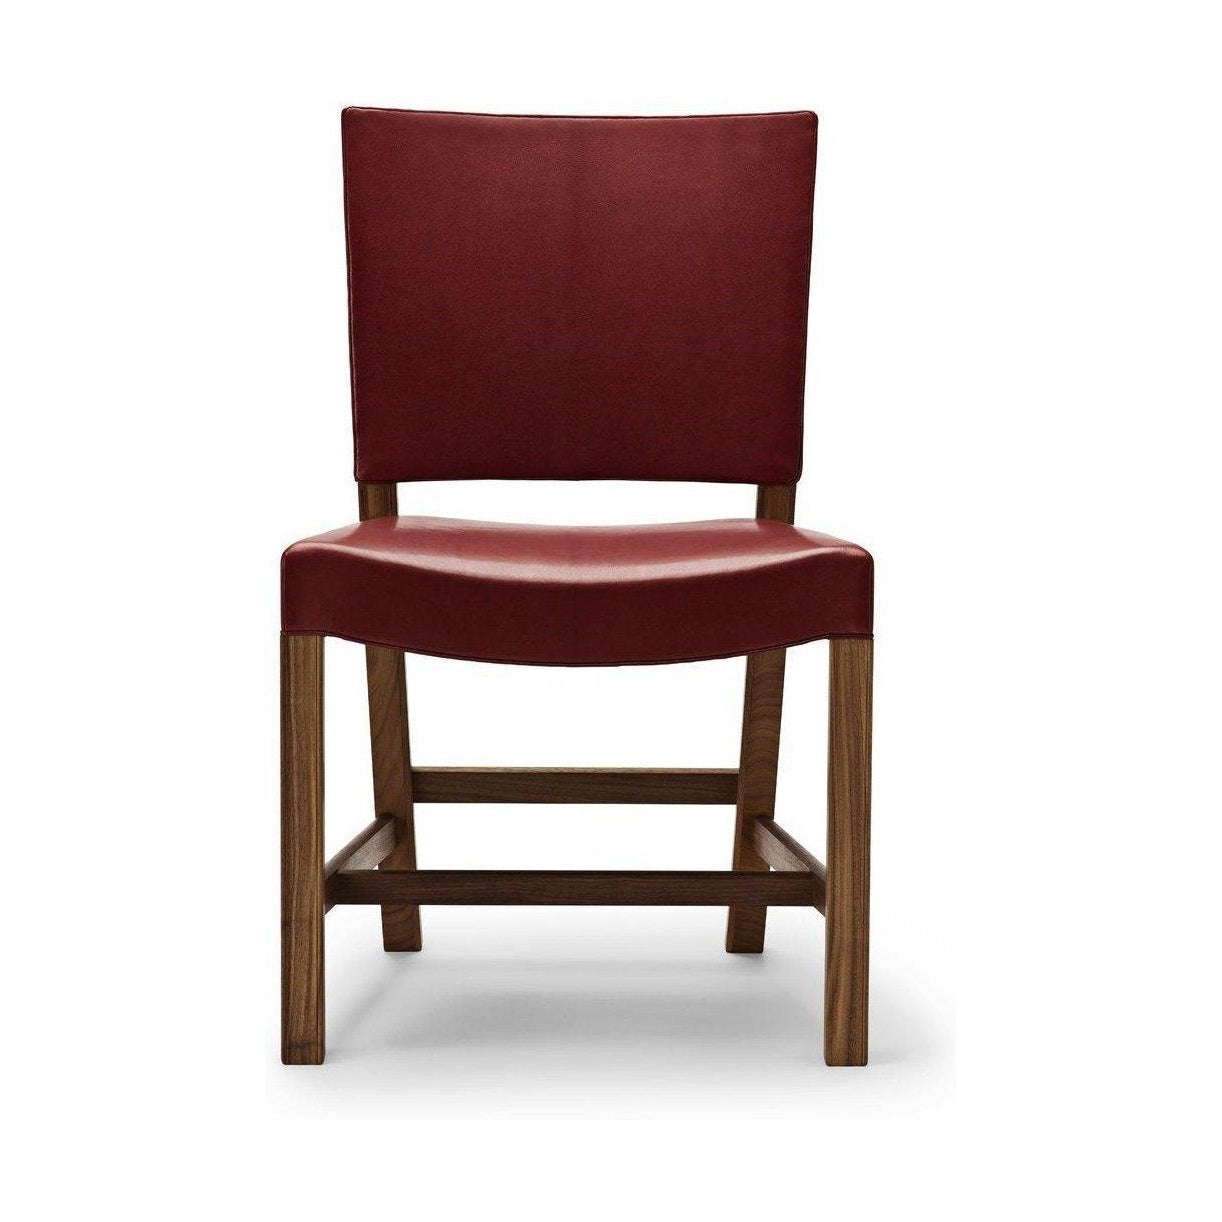 Carl Hansen KK47510 La chaise rouge, noix laquée / chèvre rouge